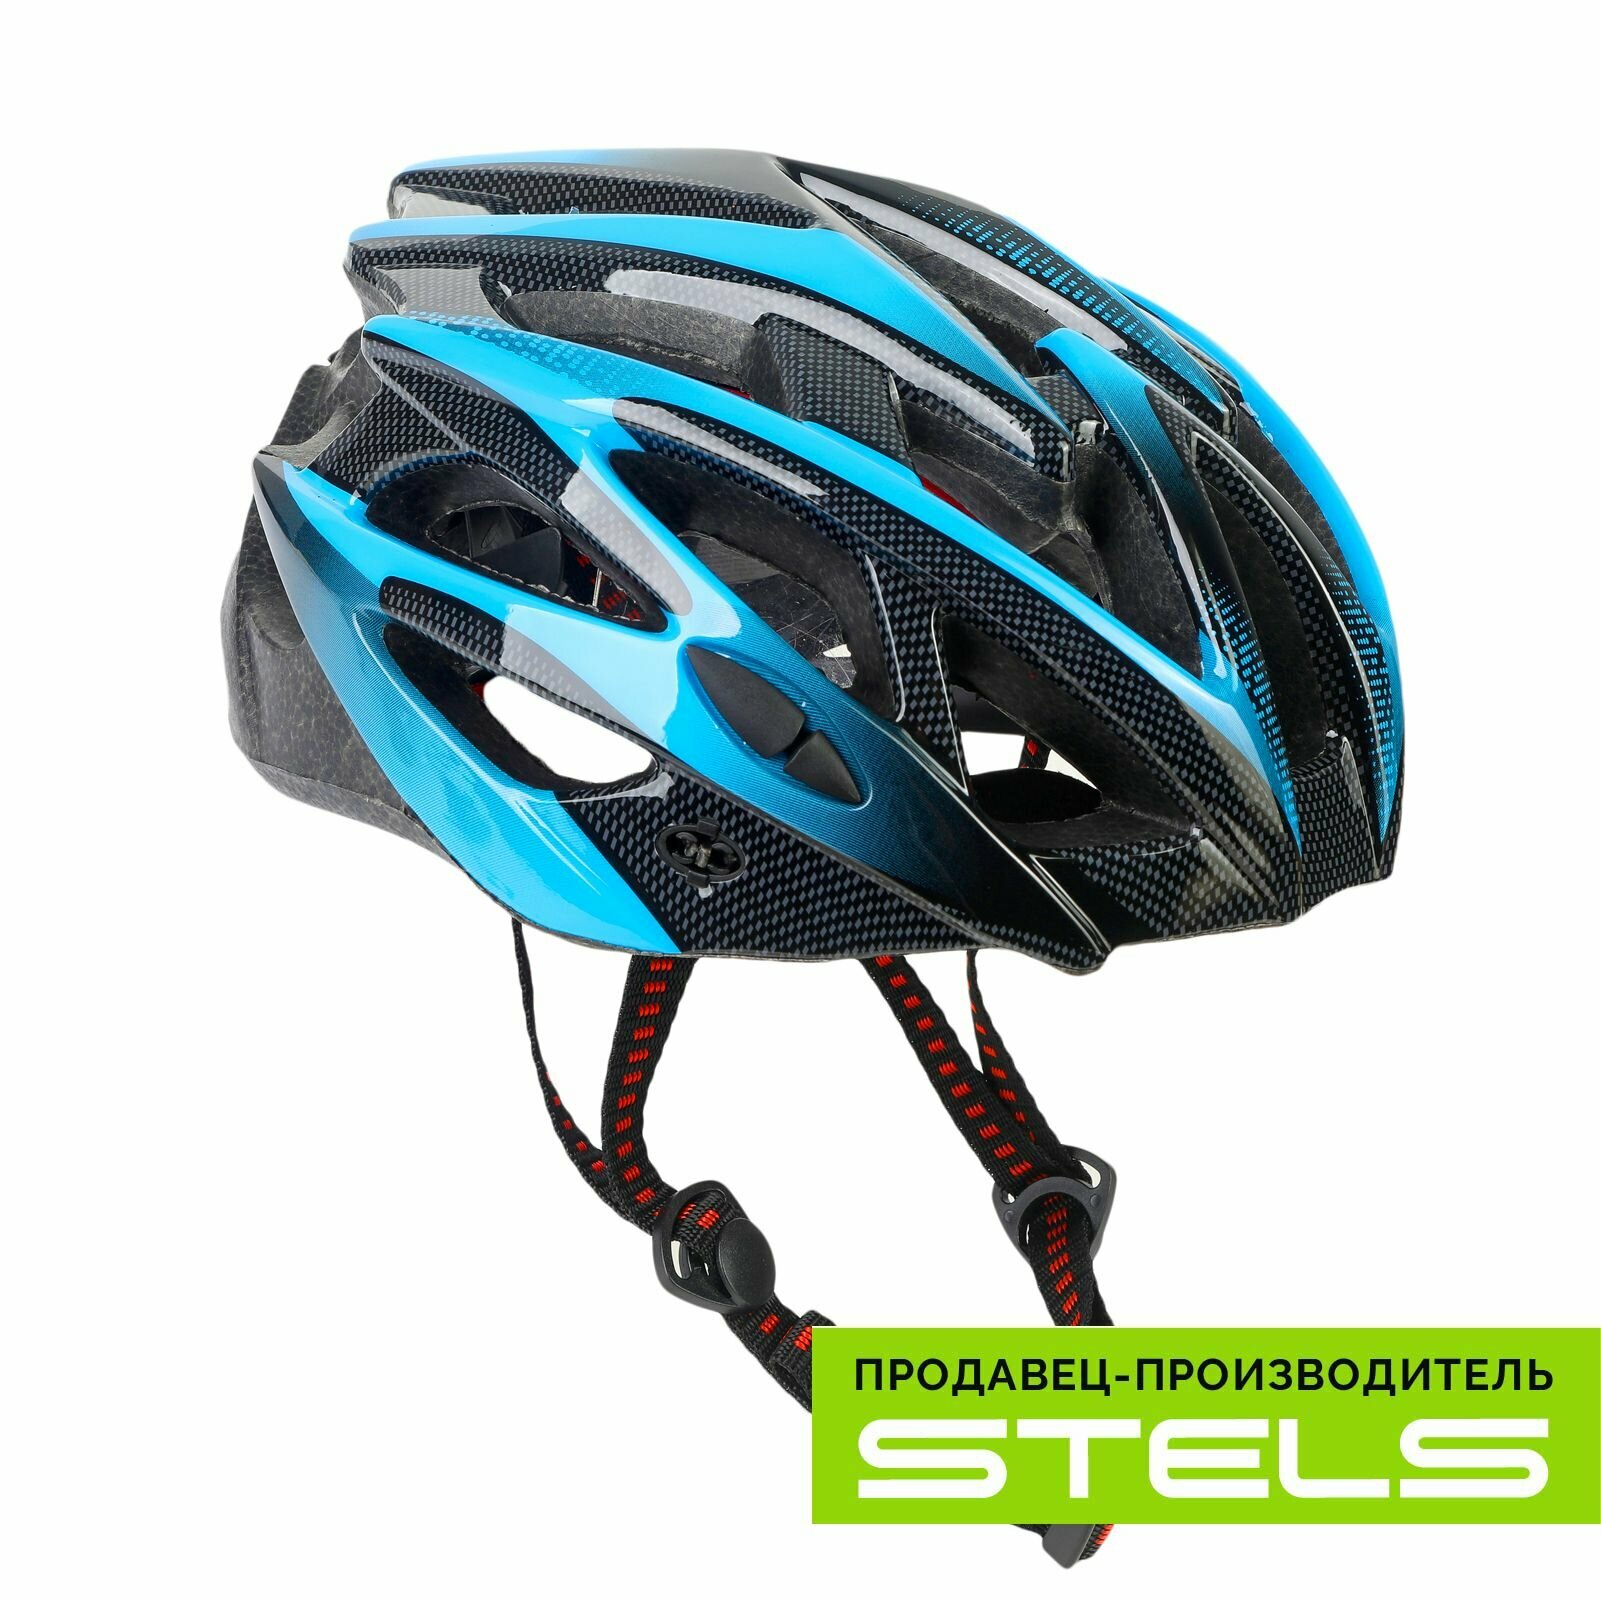 Шлем защитный для катания на велосипеде FSD-HL056 (in-mold) сине-чёрный, размер L NEW